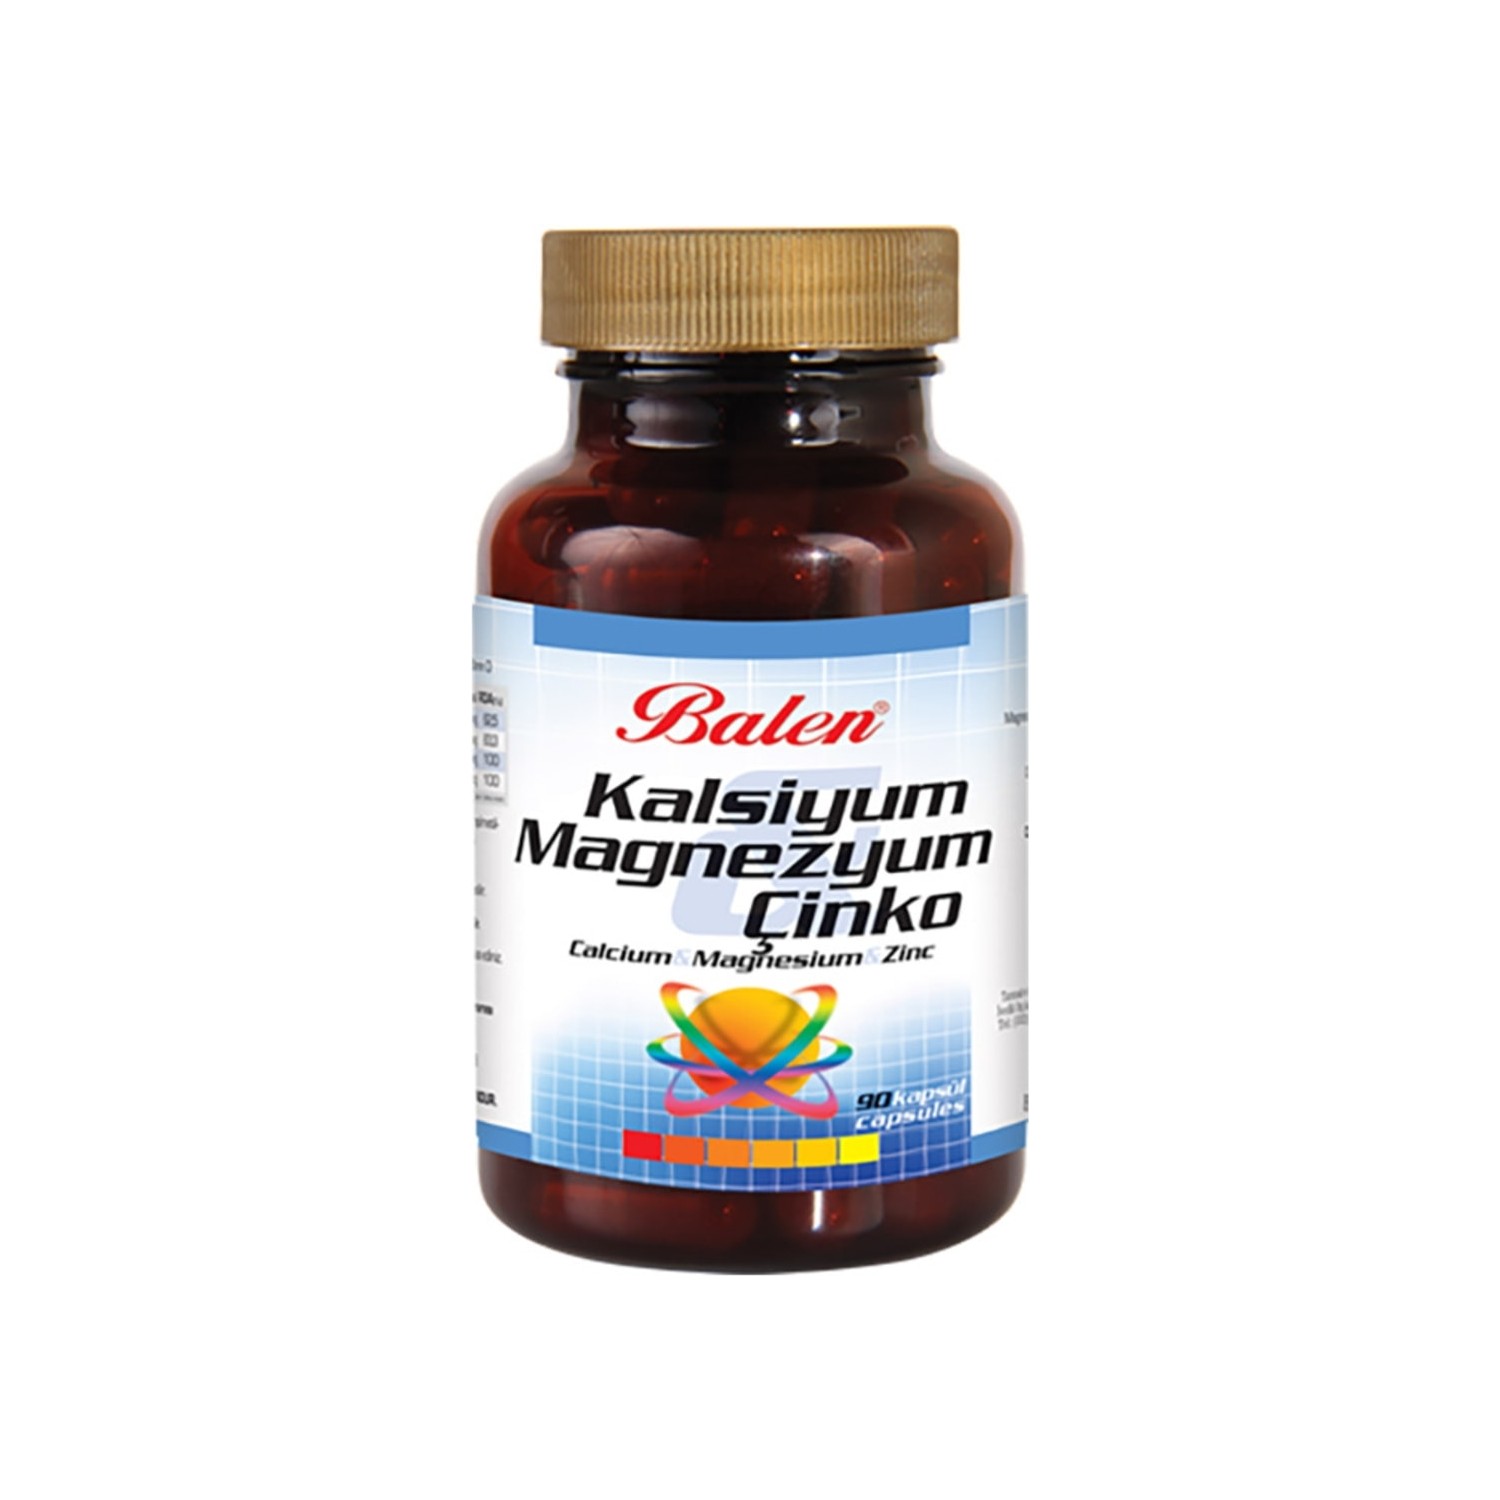 Витаминный комплекс Balen кальций, магний, цинк, 90 капсул, 709 мг витаминный комплекс balen omega 3 витамин b кальций магний цинк